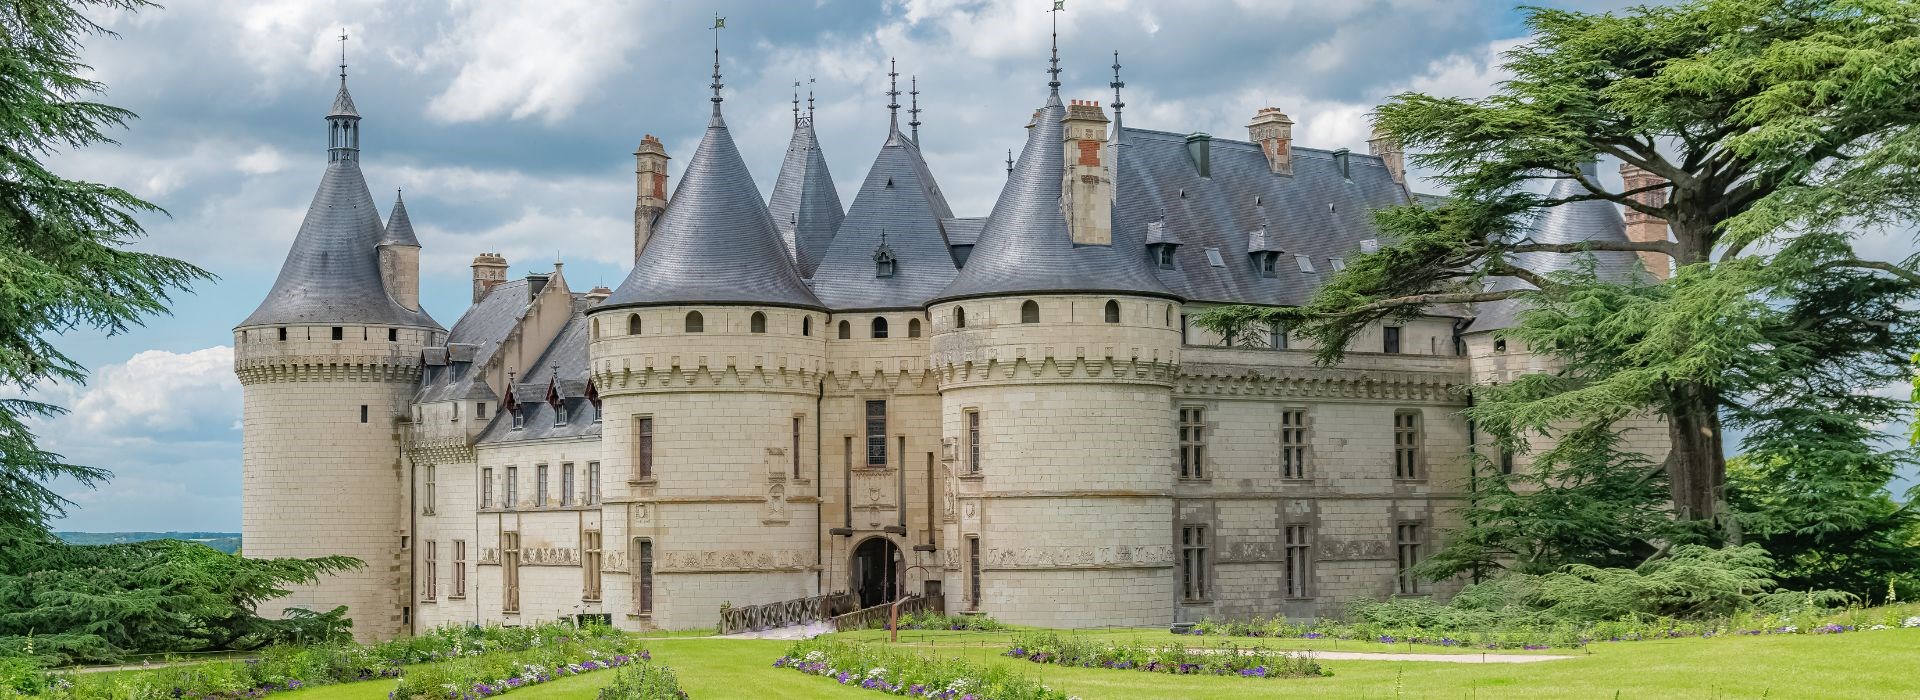 Visiter Chaumont-sur-Loire - Pays de la Loire